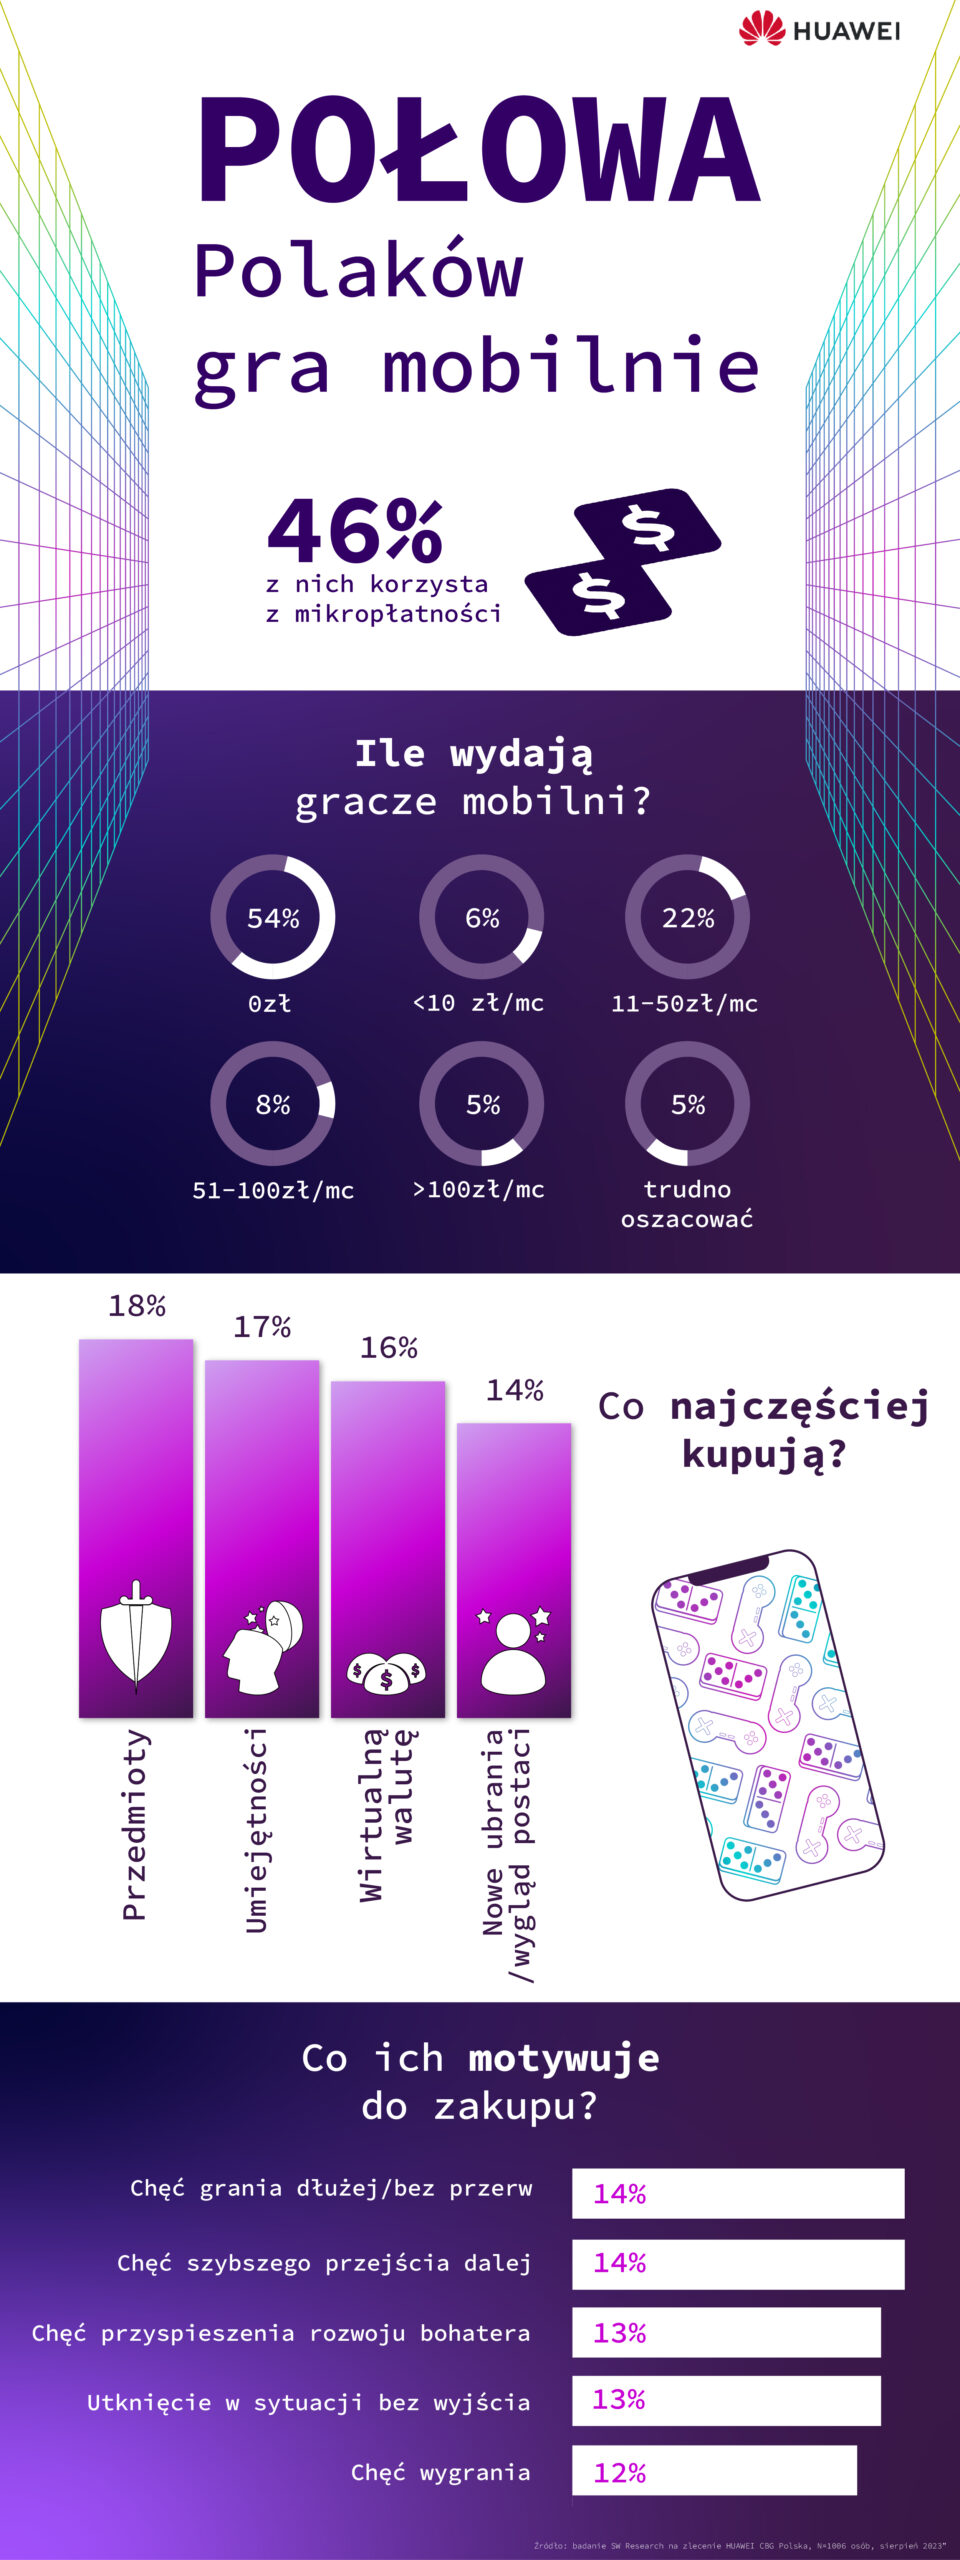 W Polsce 46% graczy mobilnych płaci za postępy w grze – badanie Huawei